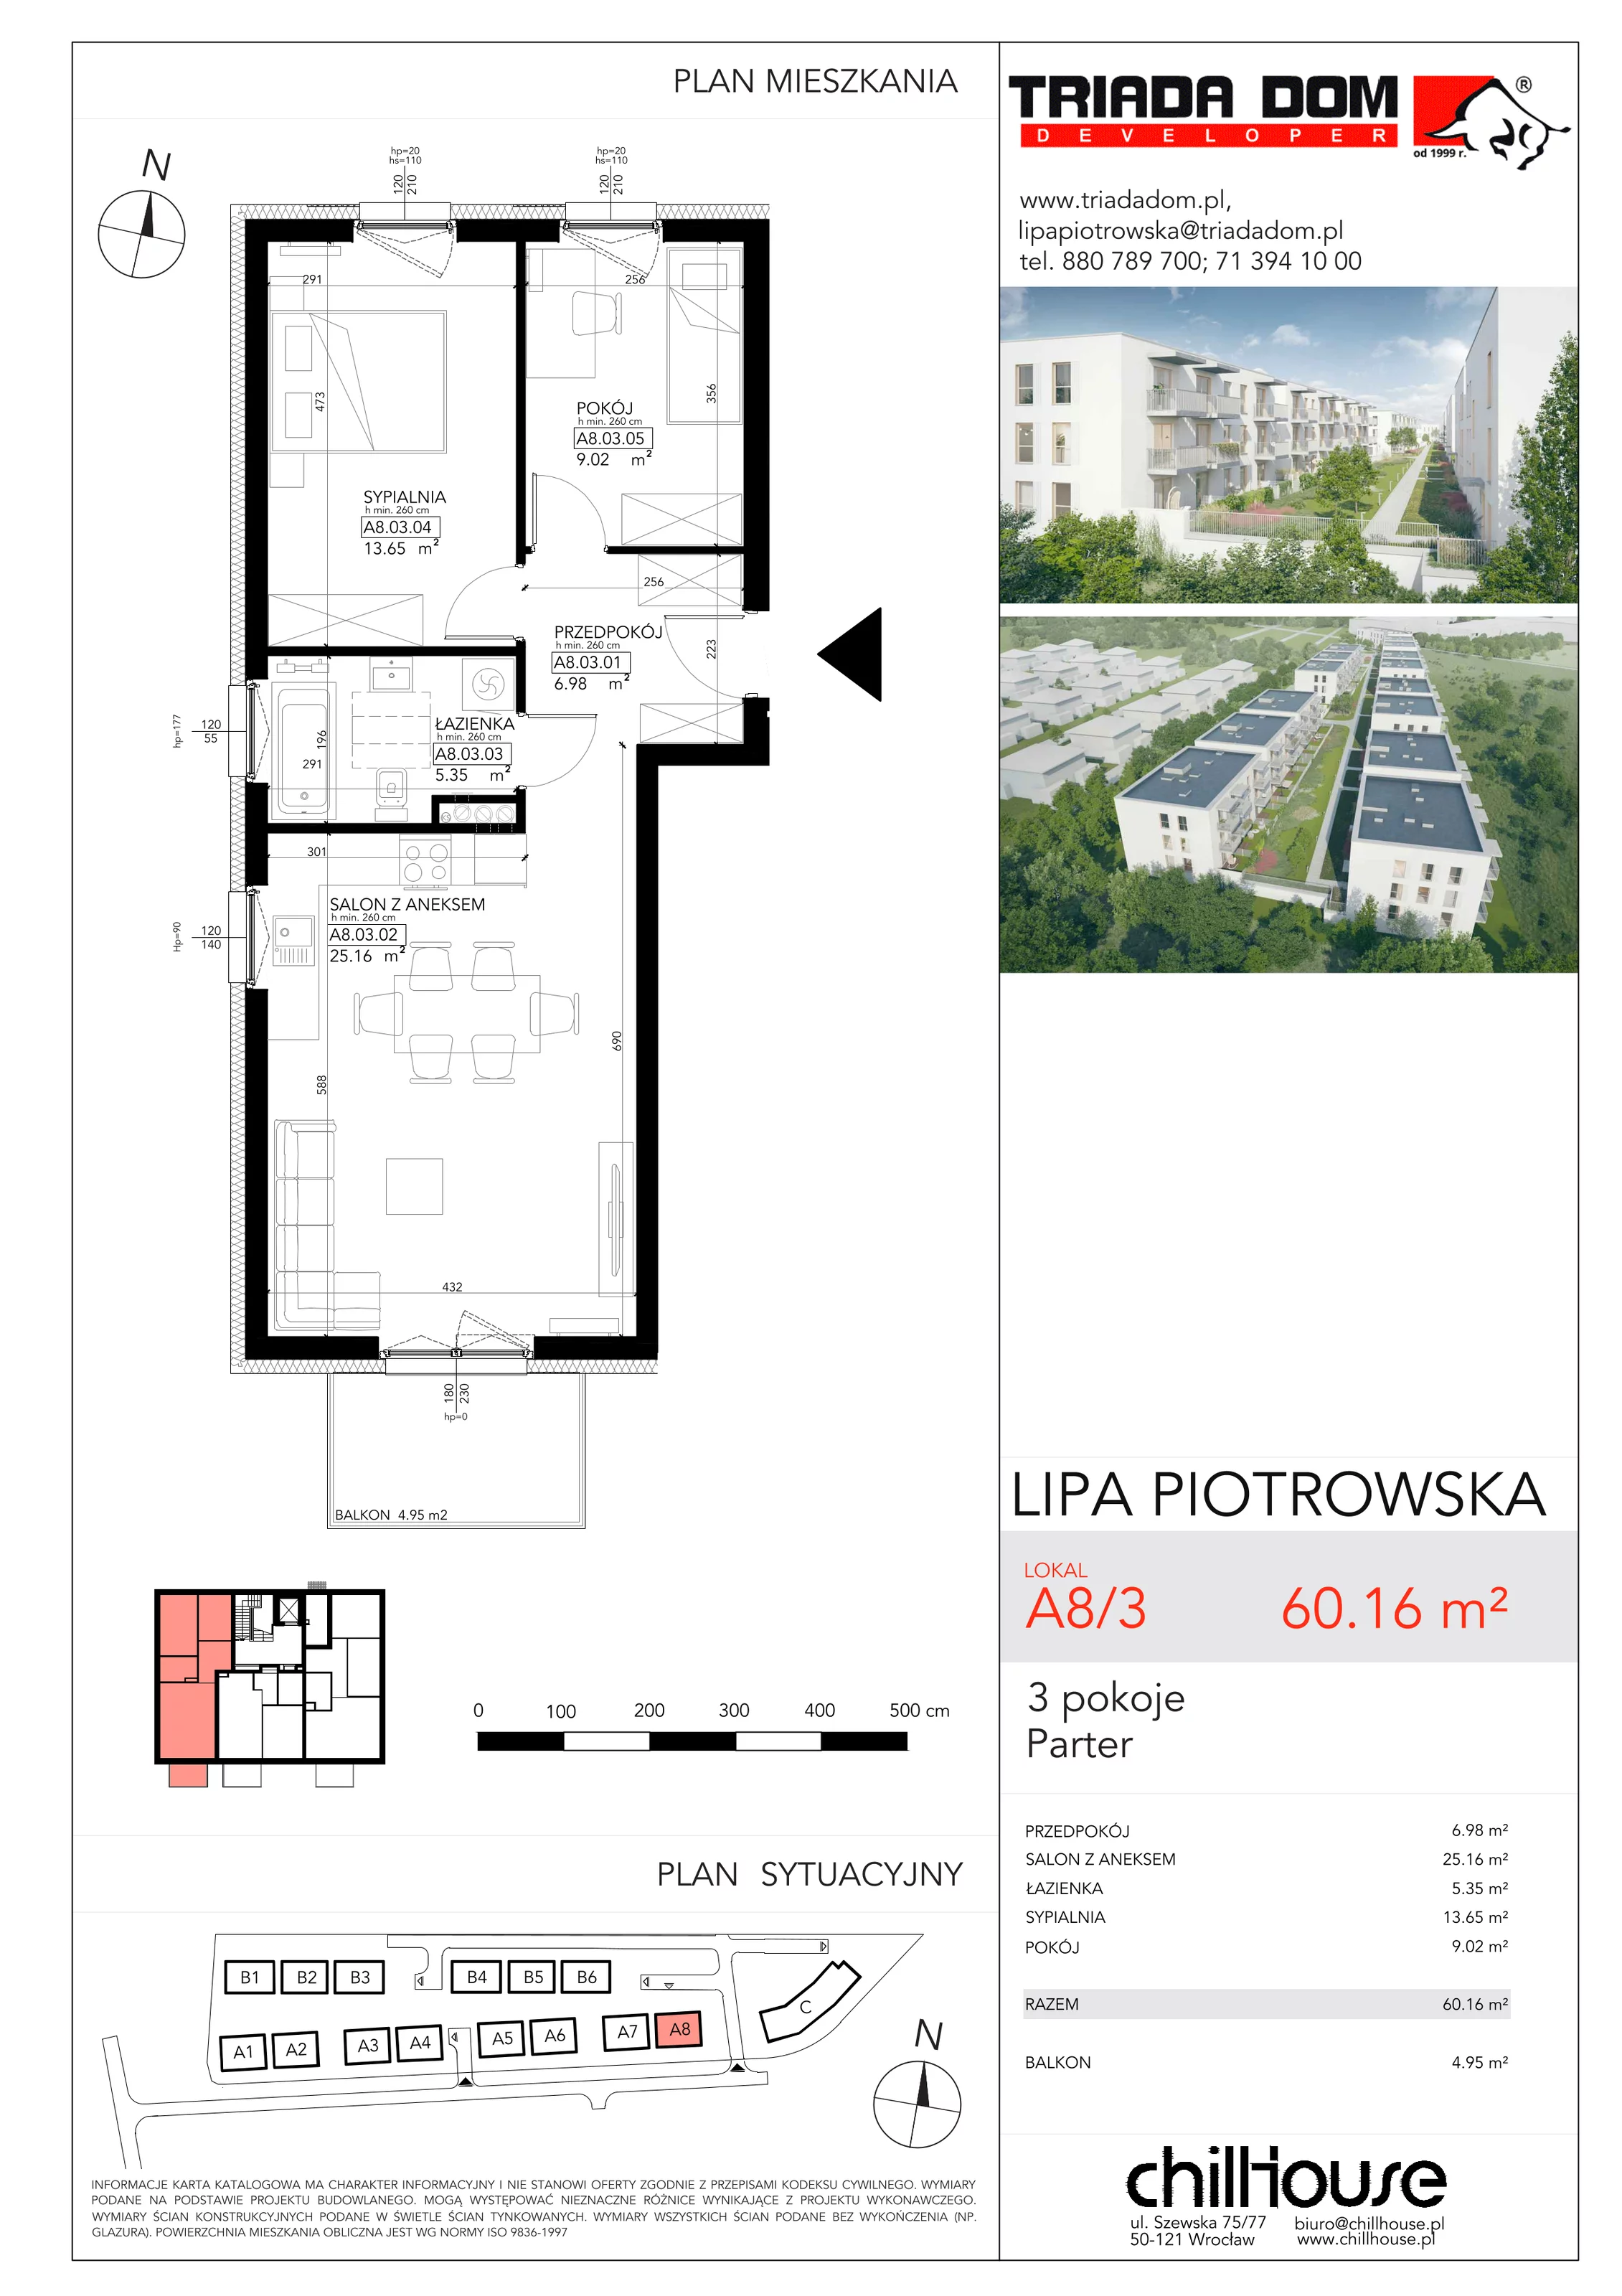 Mieszkanie 60,16 m², parter, oferta nr A83, Lipa Piotrowska, Wrocław, Lipa Piotrowska, ul. Lawendowa / Melisowa